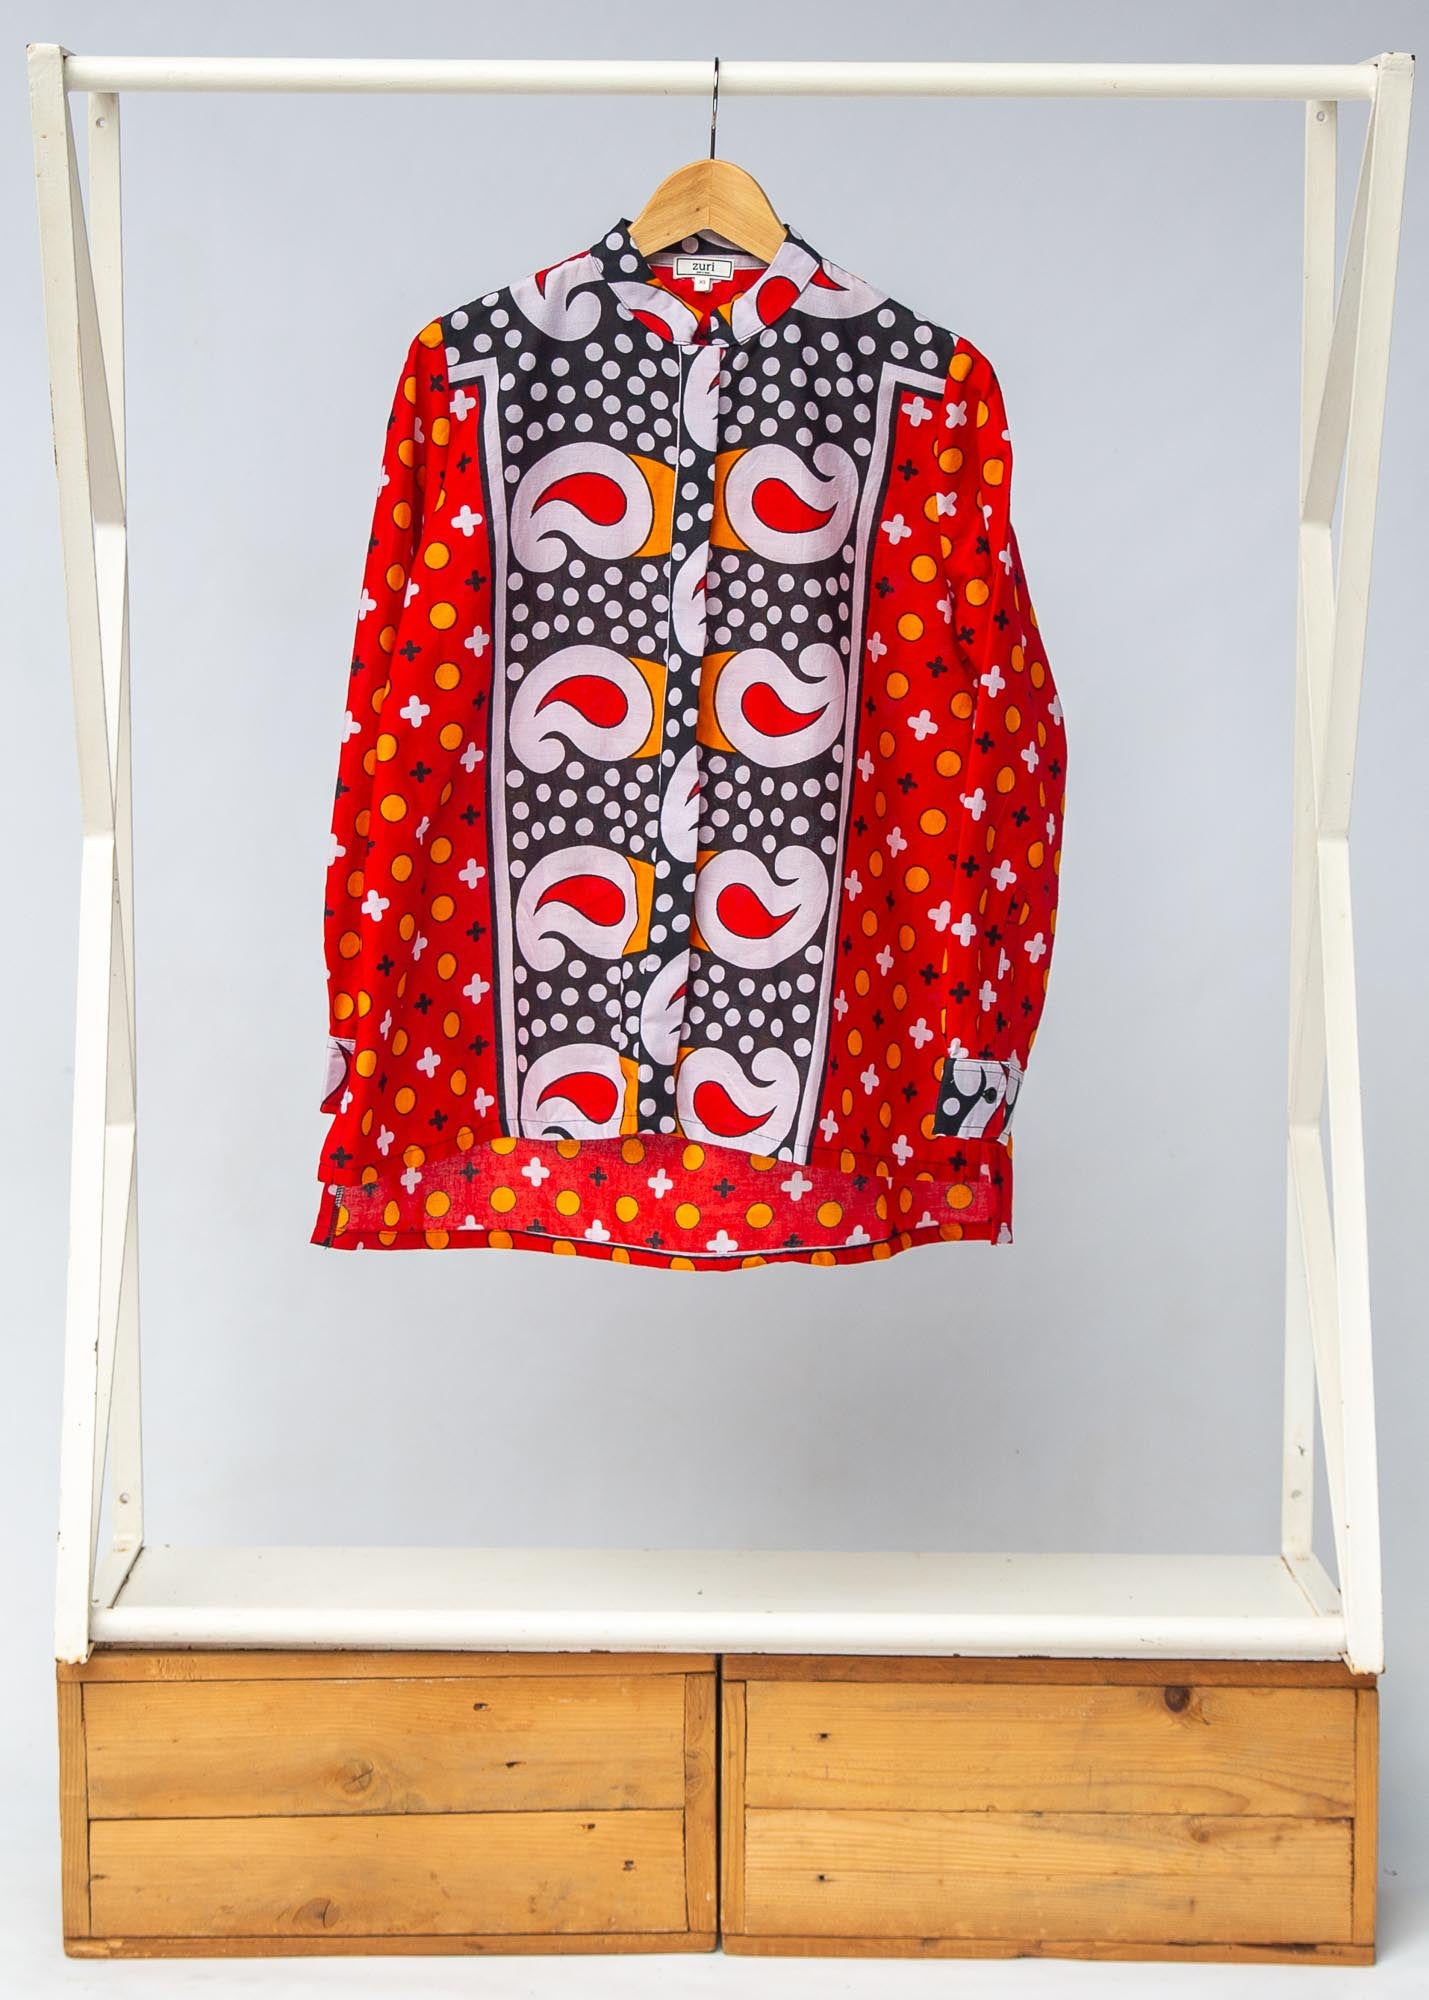 Display of red, white, black and orange mixed pattern long sleeved kanga shirt